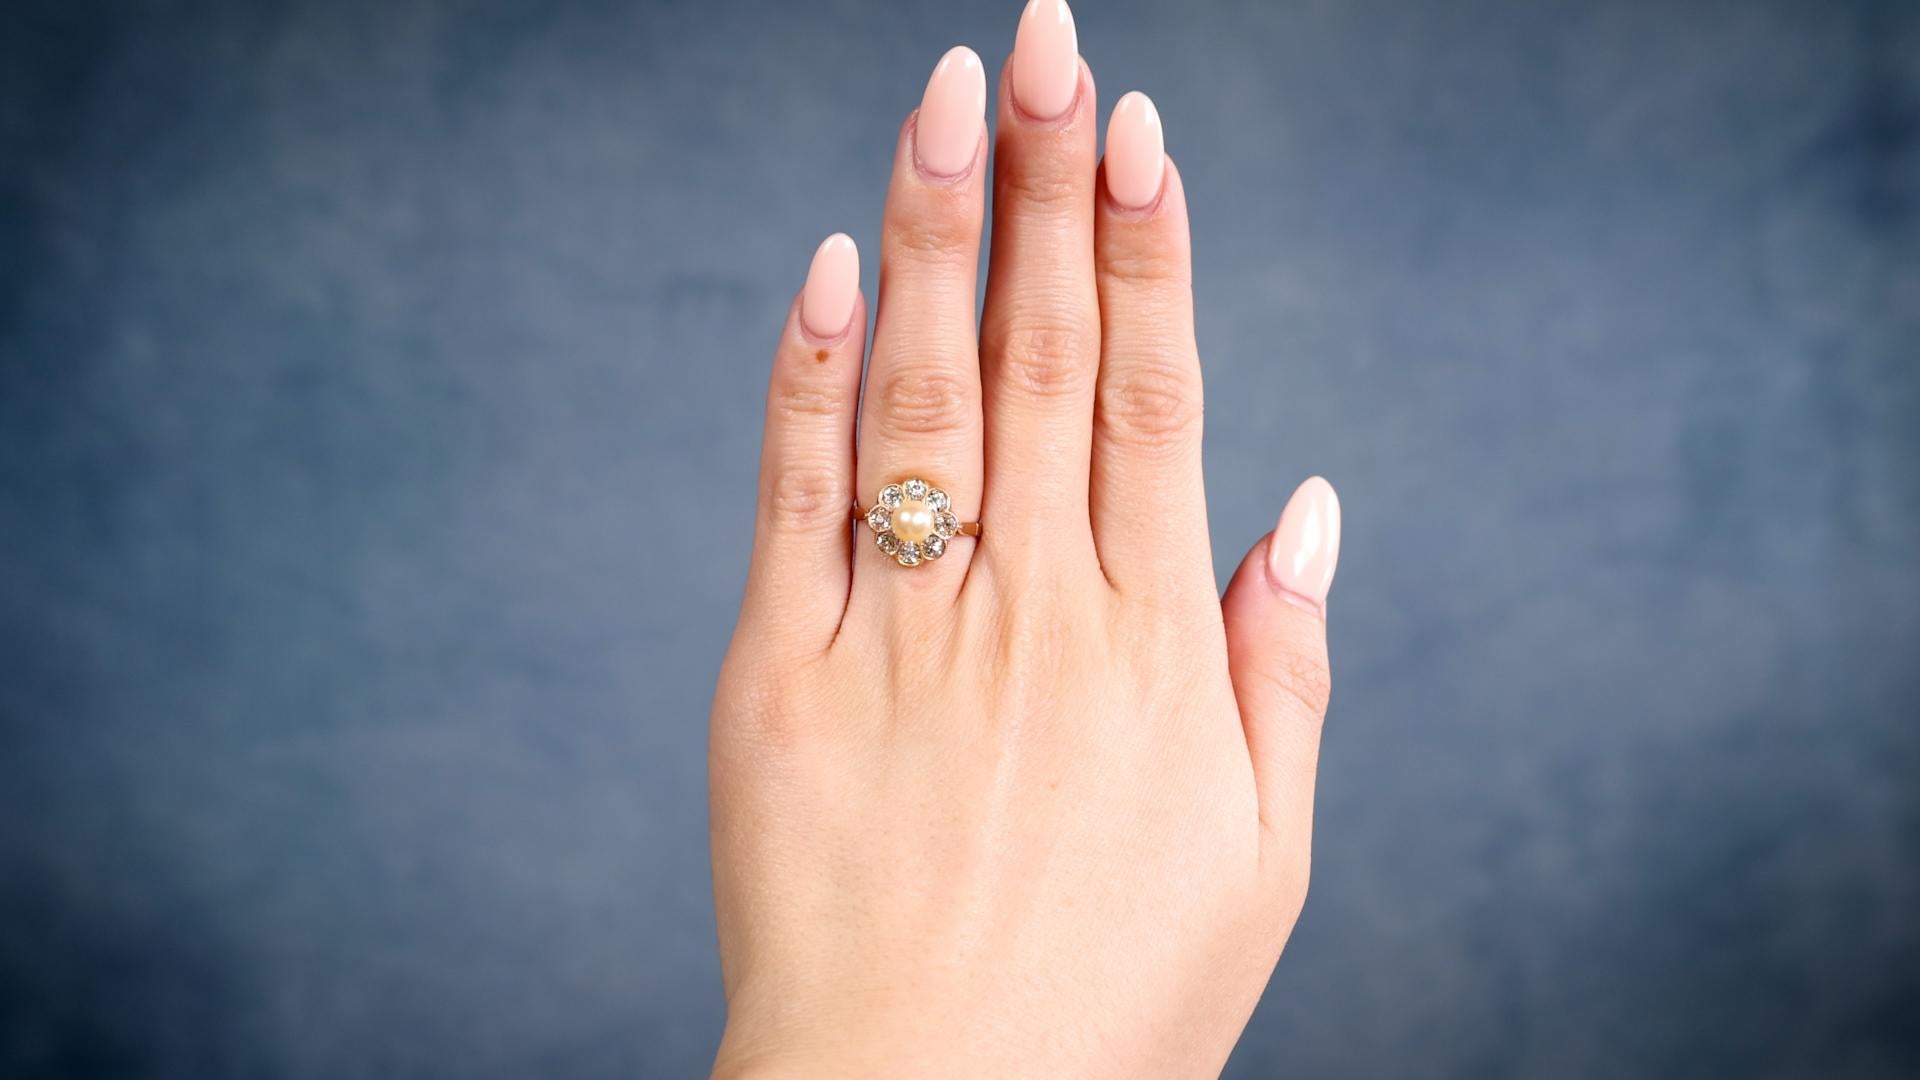 Eine Edwardian Perle Diamant 18k Gelbgold Cluster Ring. Mit einer cremefarbenen Perle von ca. 5.75 mm. Akzentuiert durch acht Diamanten im alten europäischen Schliff mit einem Gesamtgewicht von ca. 0,90 Karat, eingestuft in Farbe J-K, Reinheit